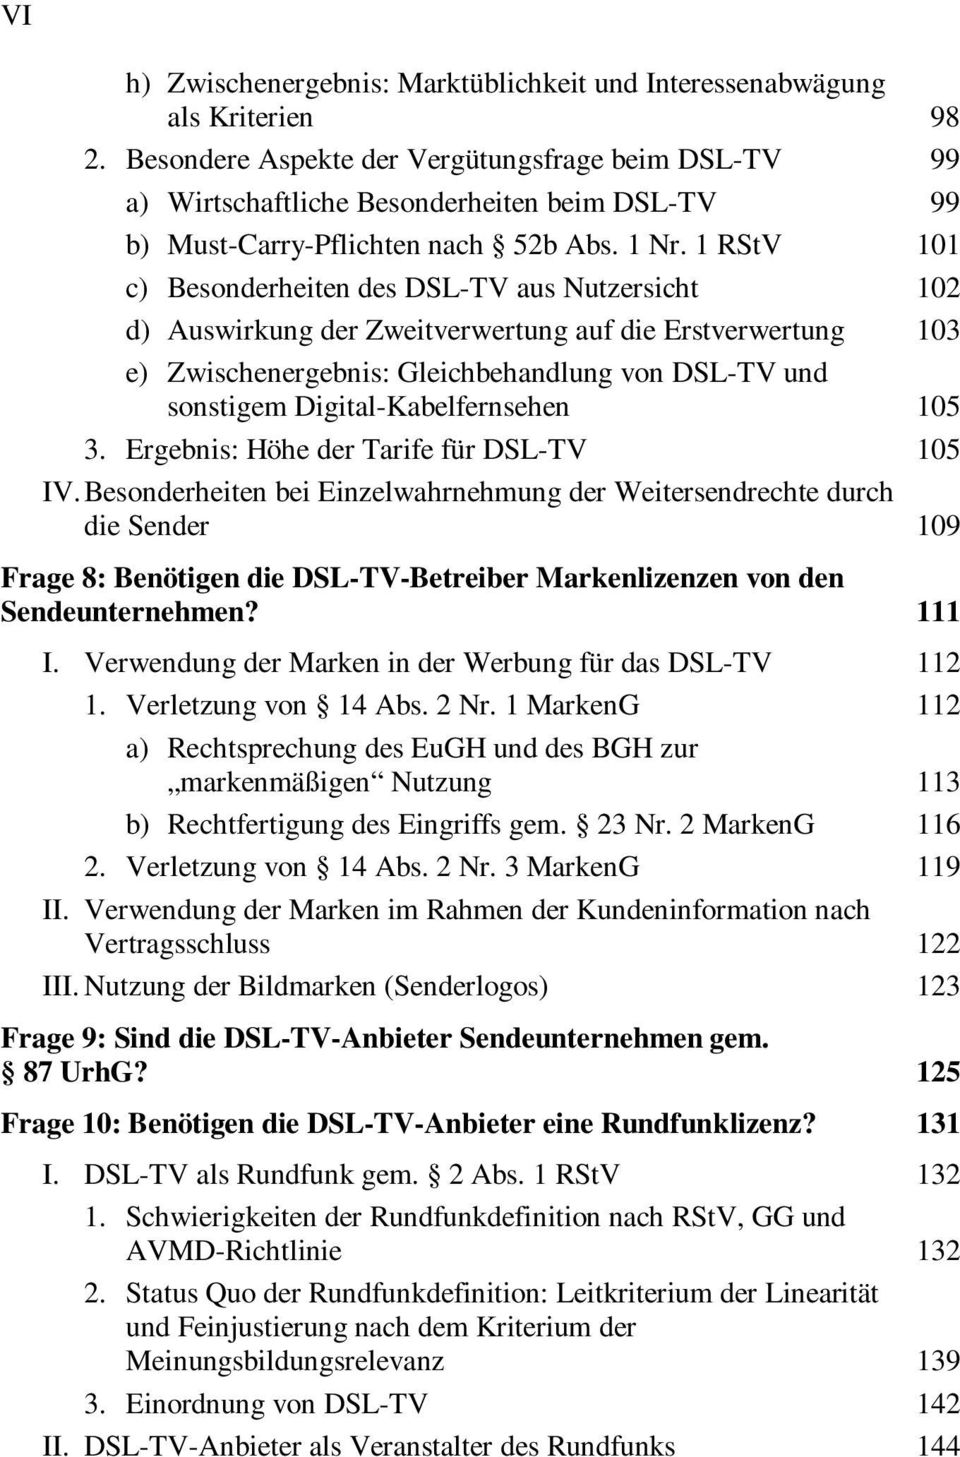 1 RStV 101 c) Besonderheiten des DSL-TV aus Nutzersicht 102 d) Auswirkung der Zweitverwertung auf die Erstverwertung 103 e) Zwischenergebnis: Gleichbehandlung von DSL-TV und sonstigem